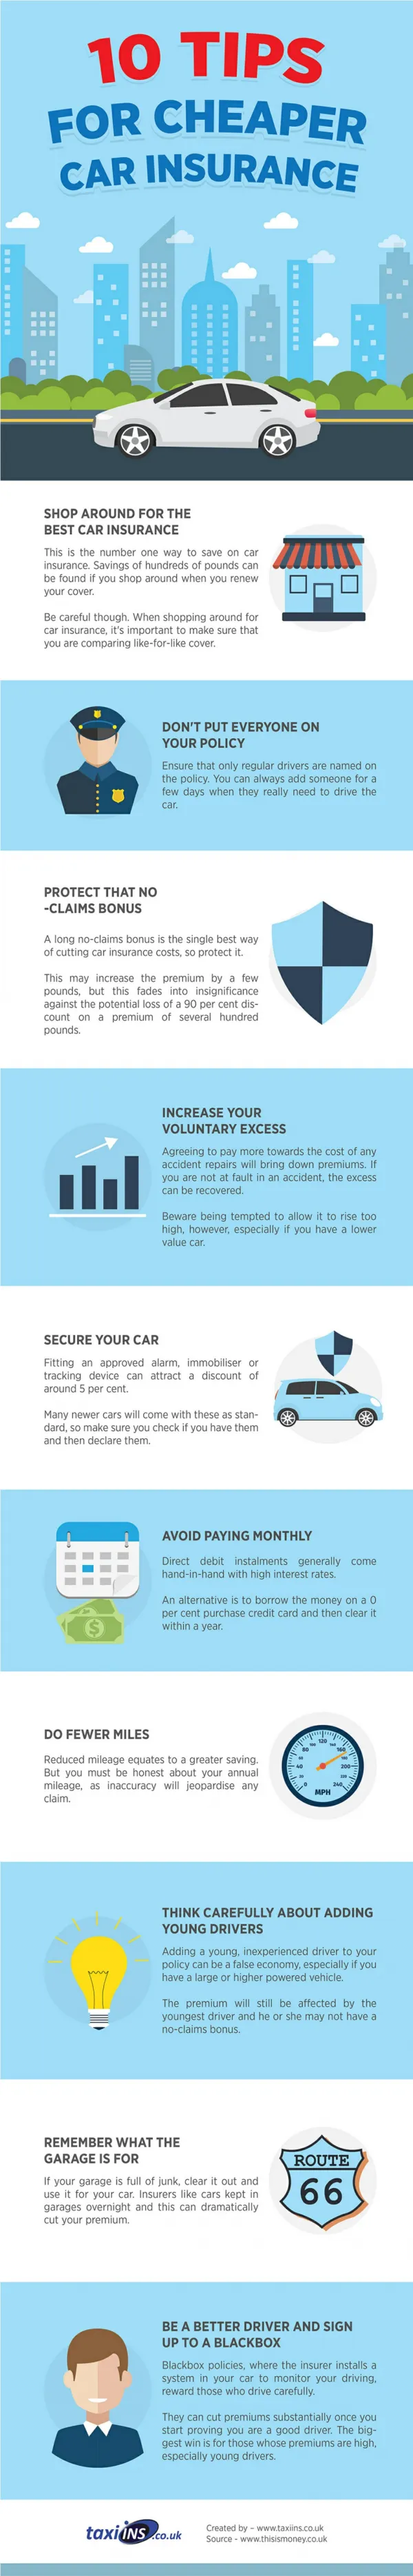 10 Tips for Cheaper Car Insurance